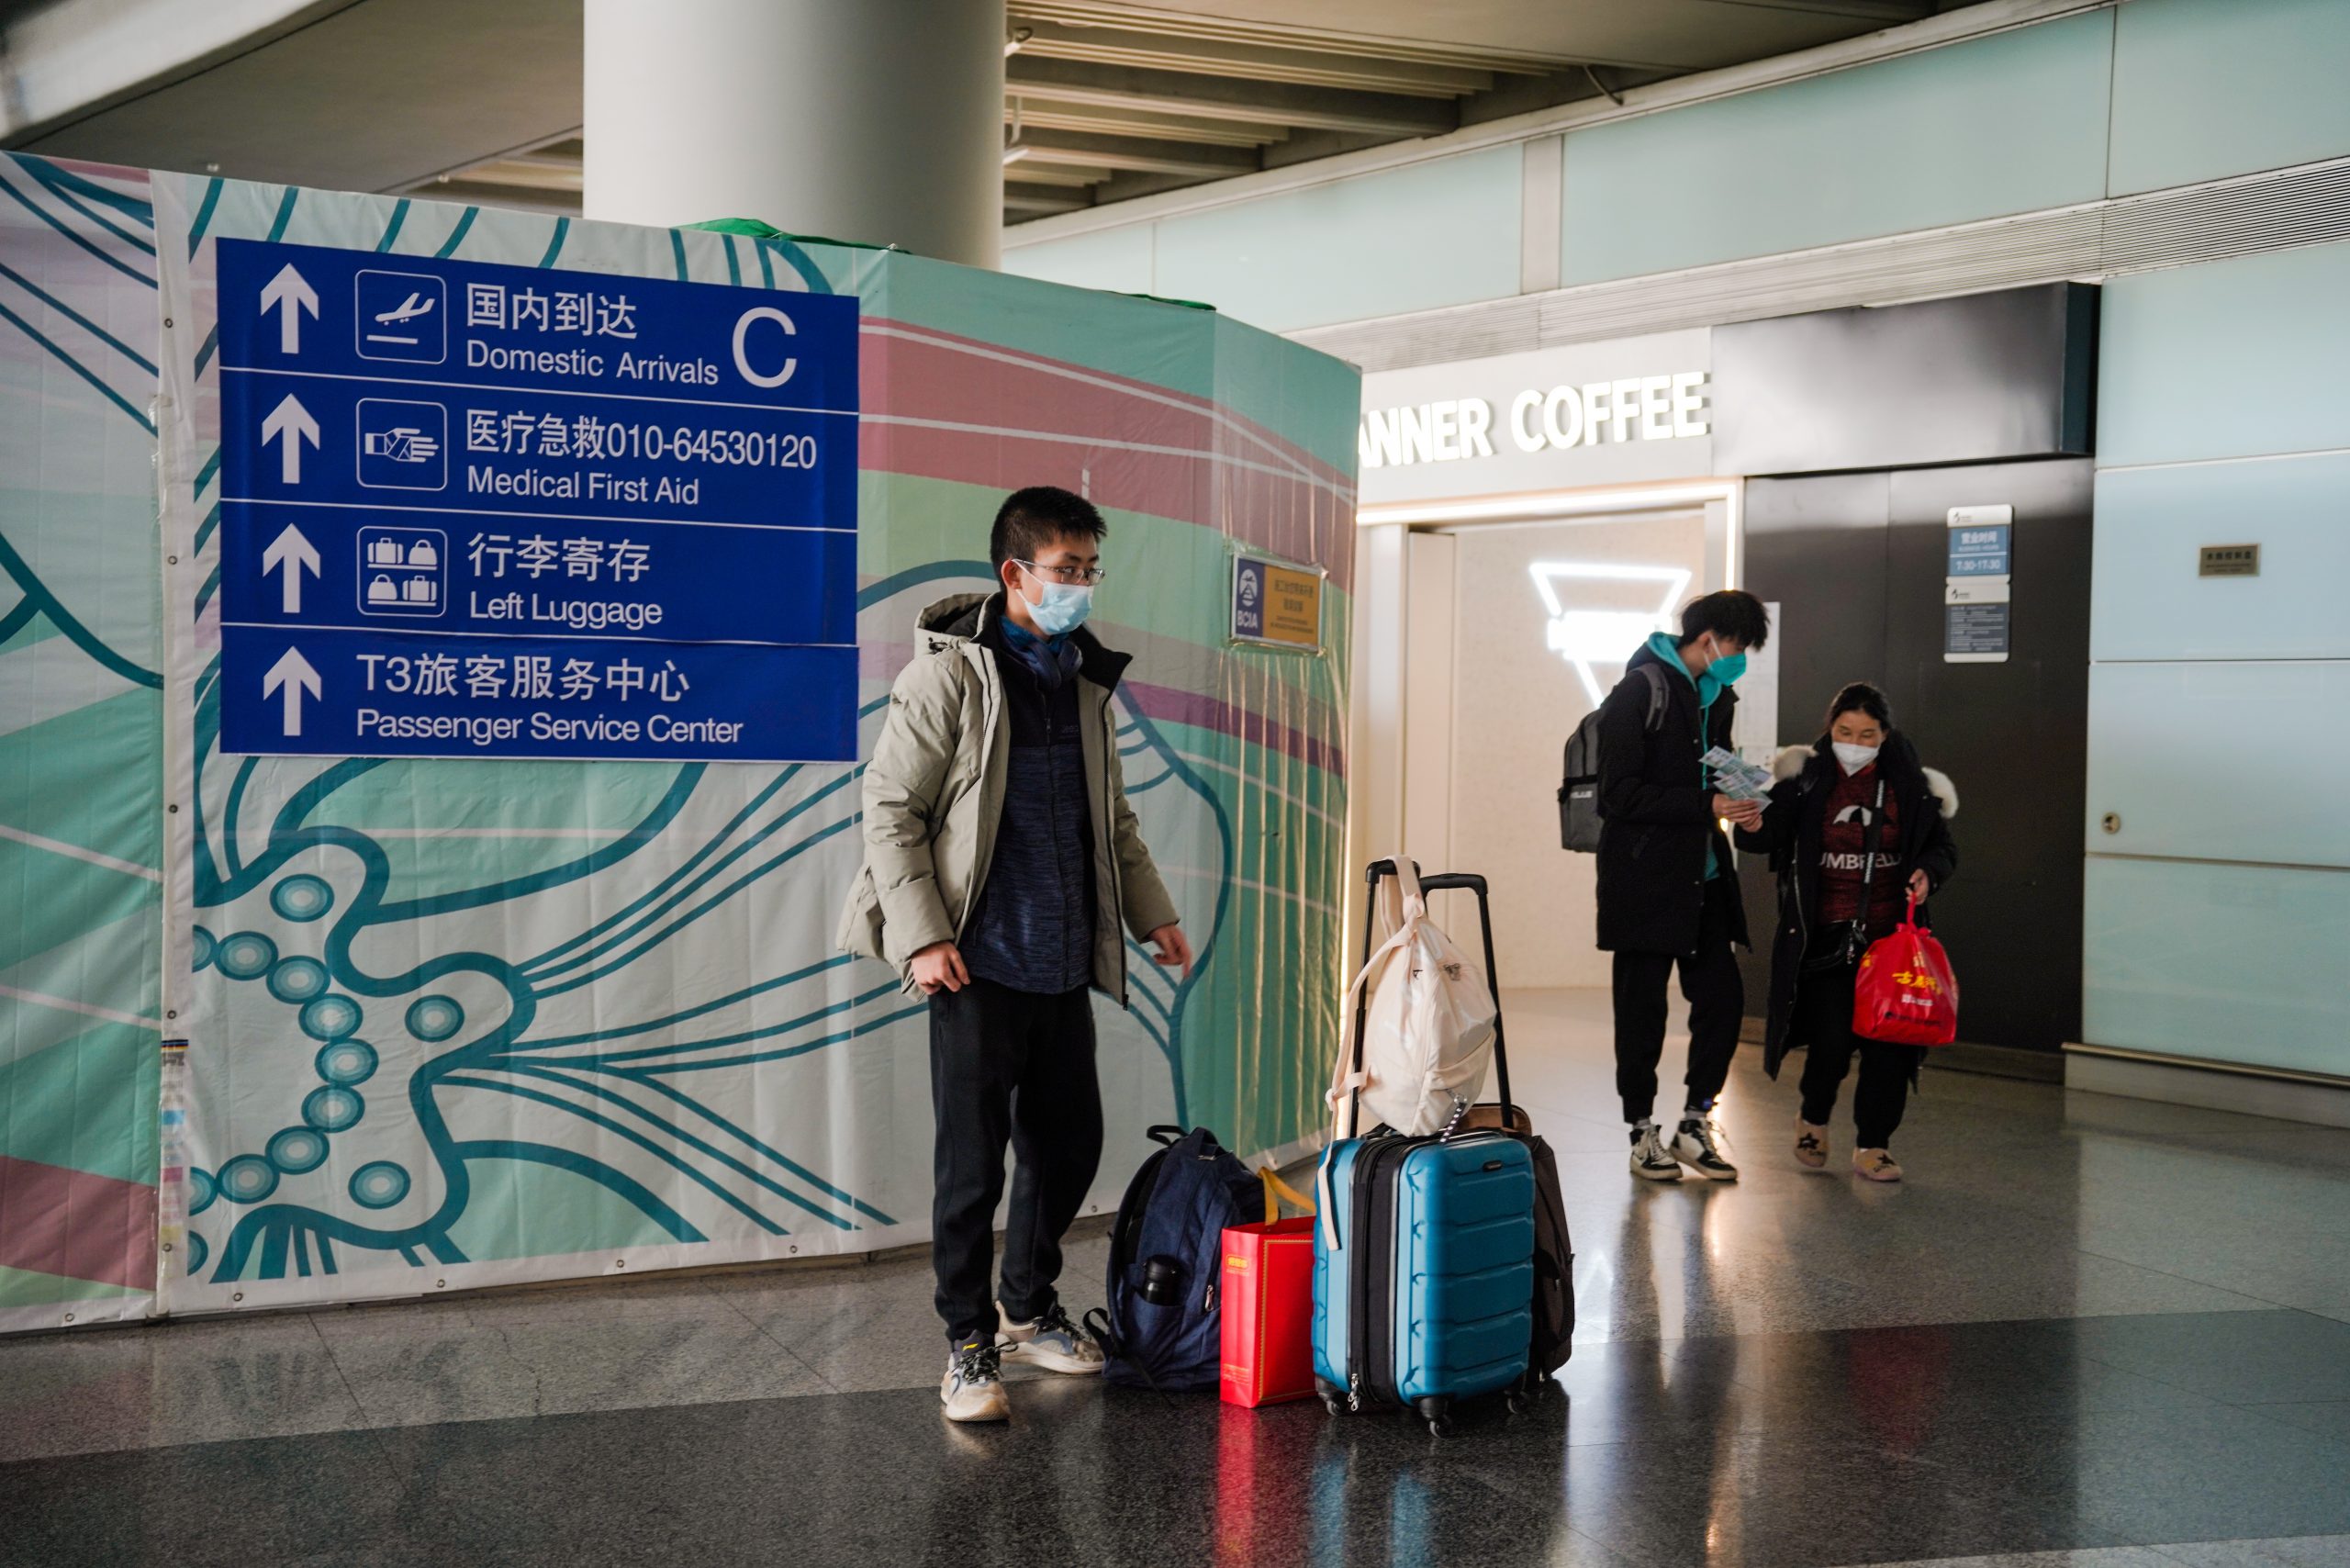 中国突公告「不再认证国外网课」 留学生学生要紧急返校 忧没签证一时找不到住处 